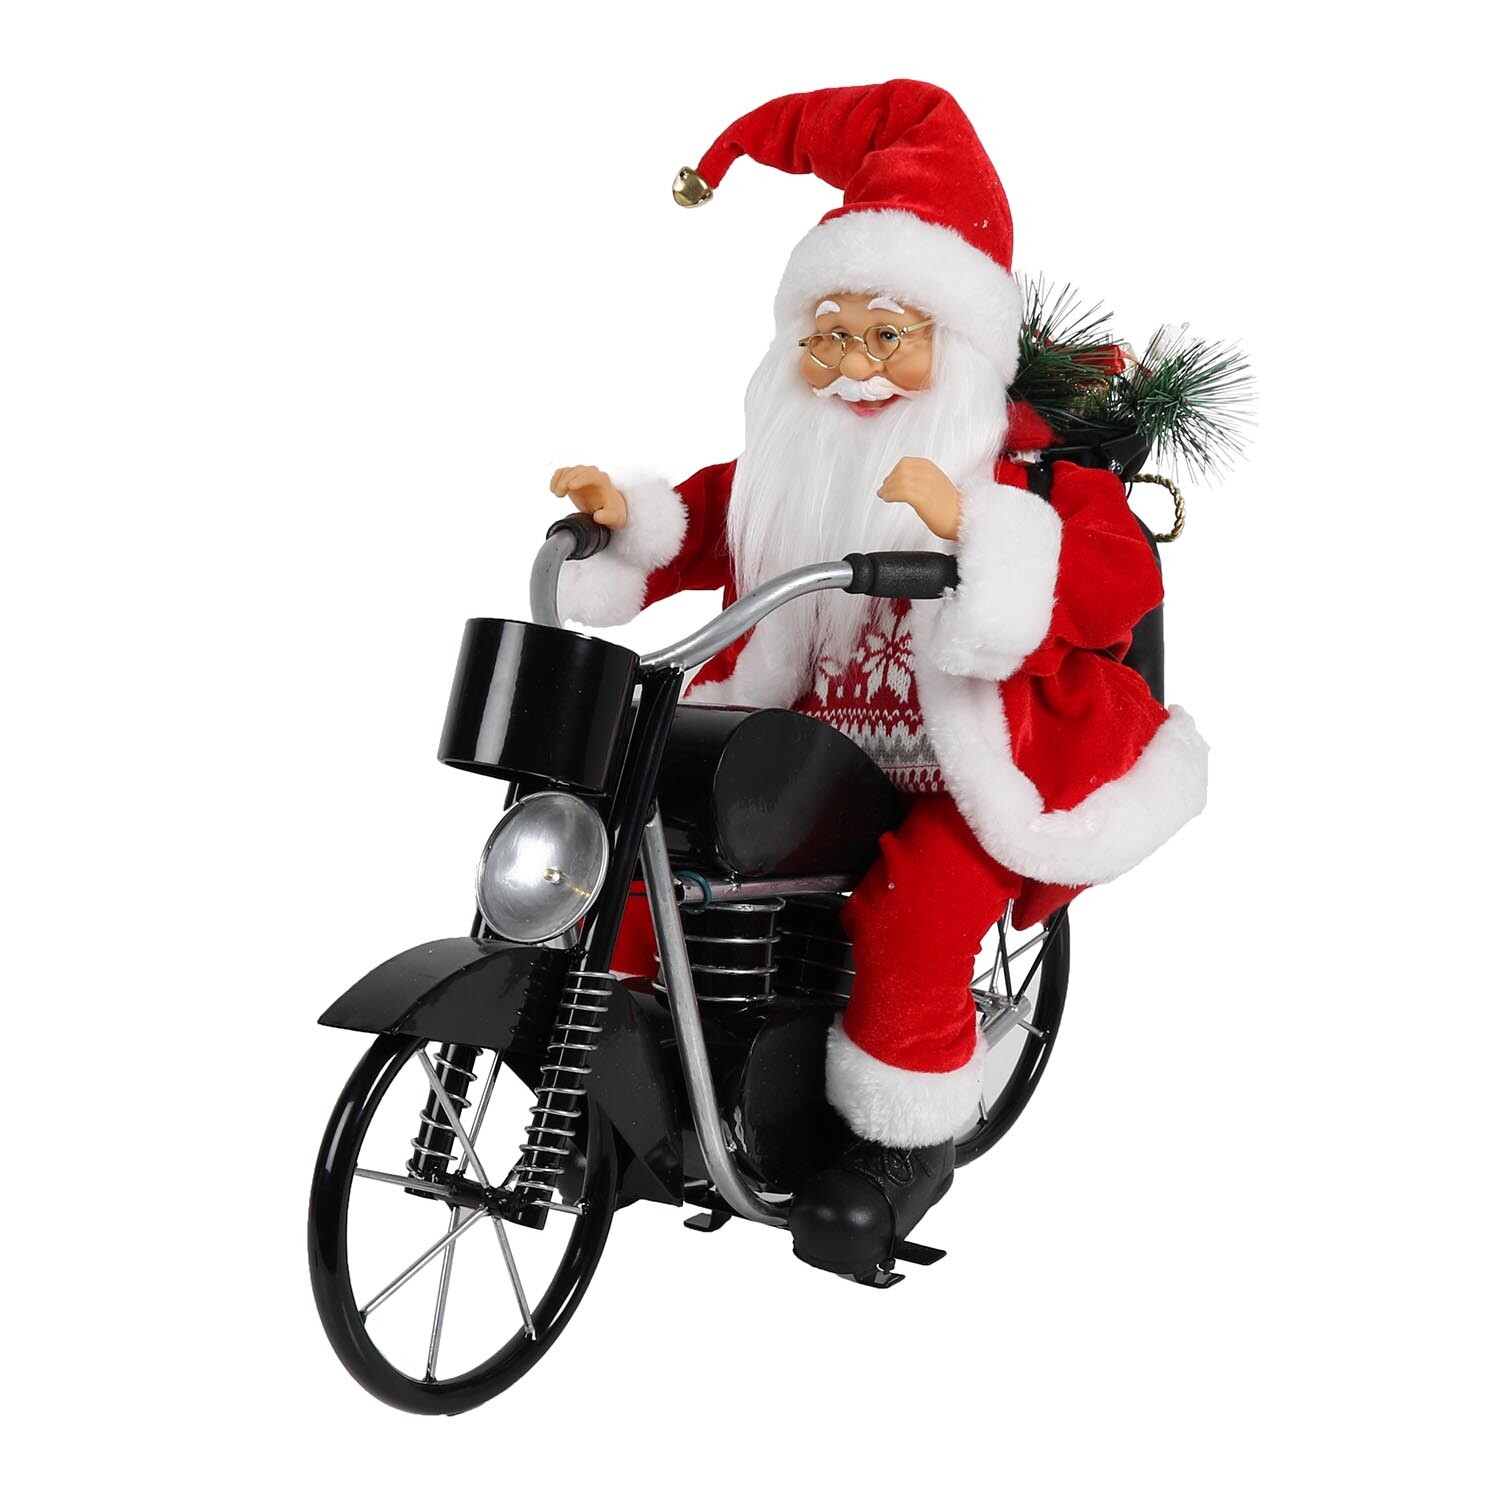 Musical Santa Riding Motorbike - Red Image 1